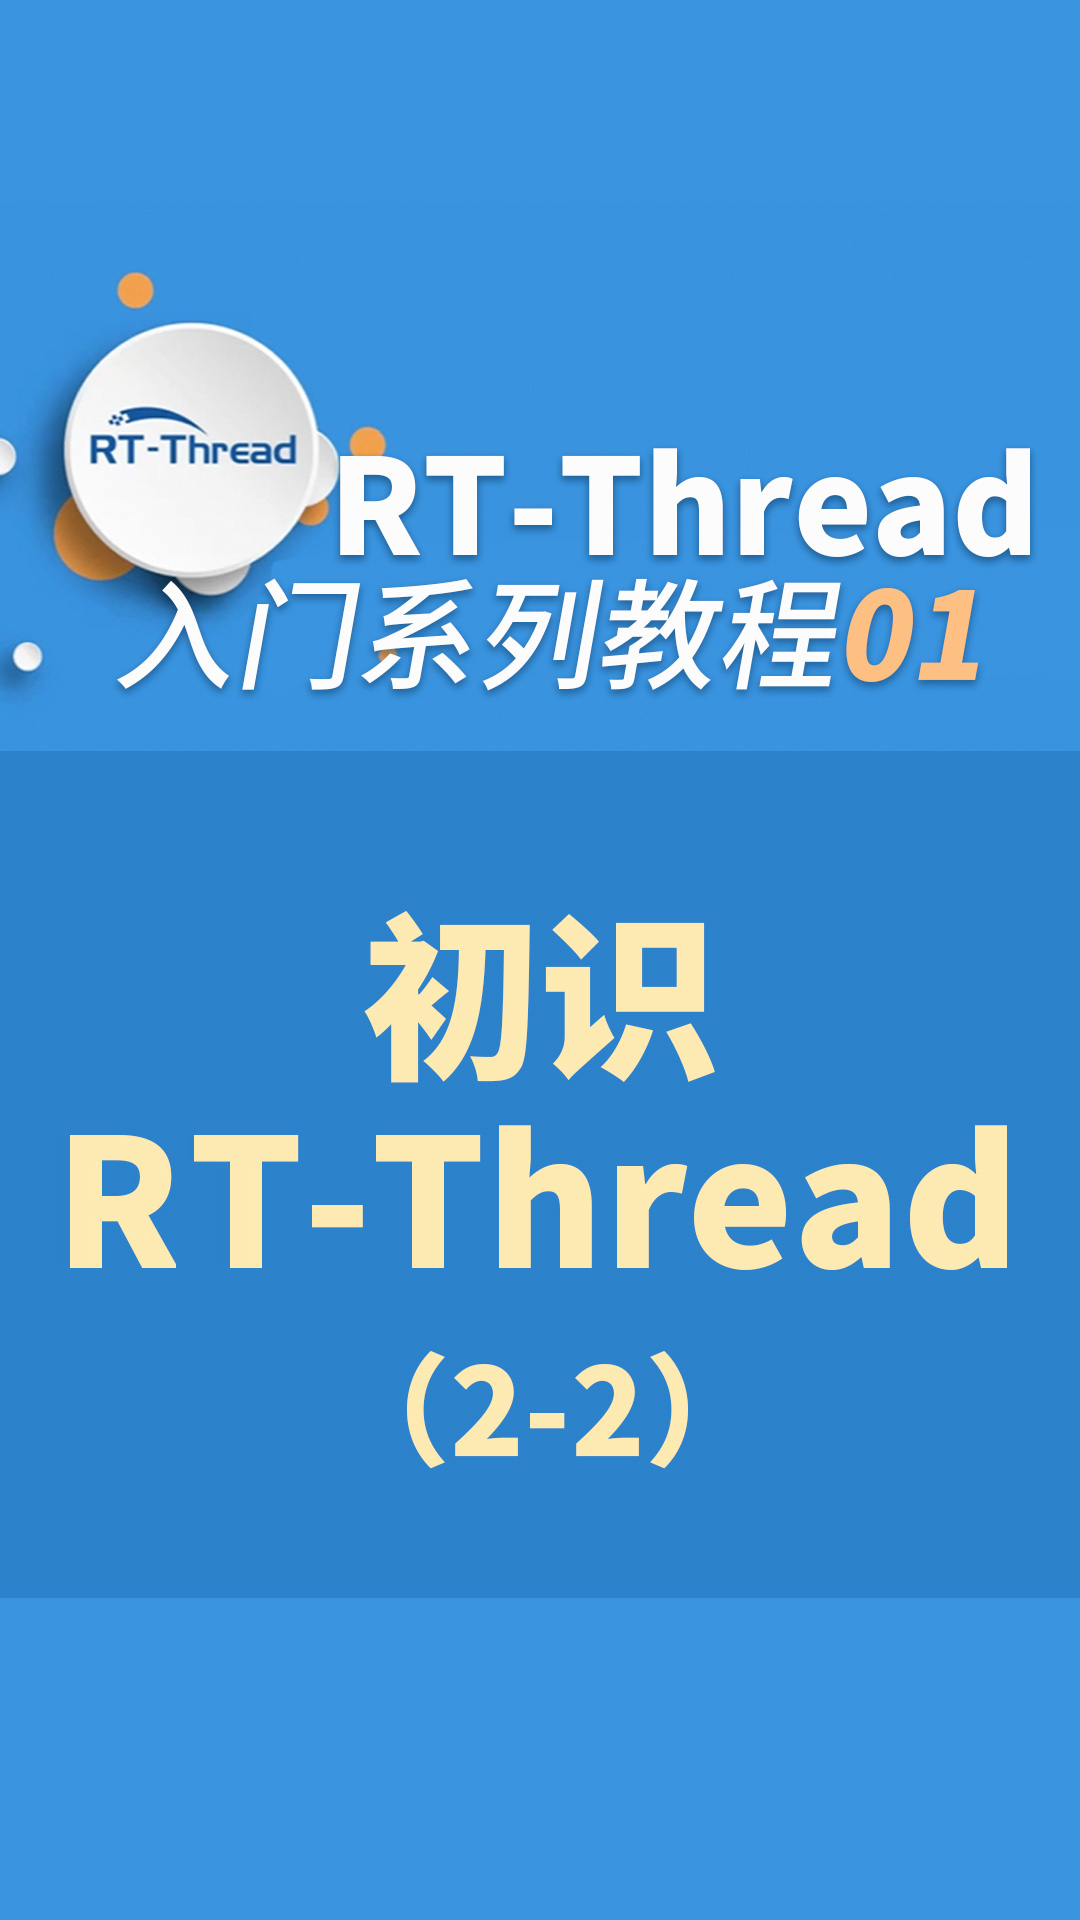 RT-Thread内核入门指南 - 1-1-初识RT-Thread2-1#嵌入式开发 